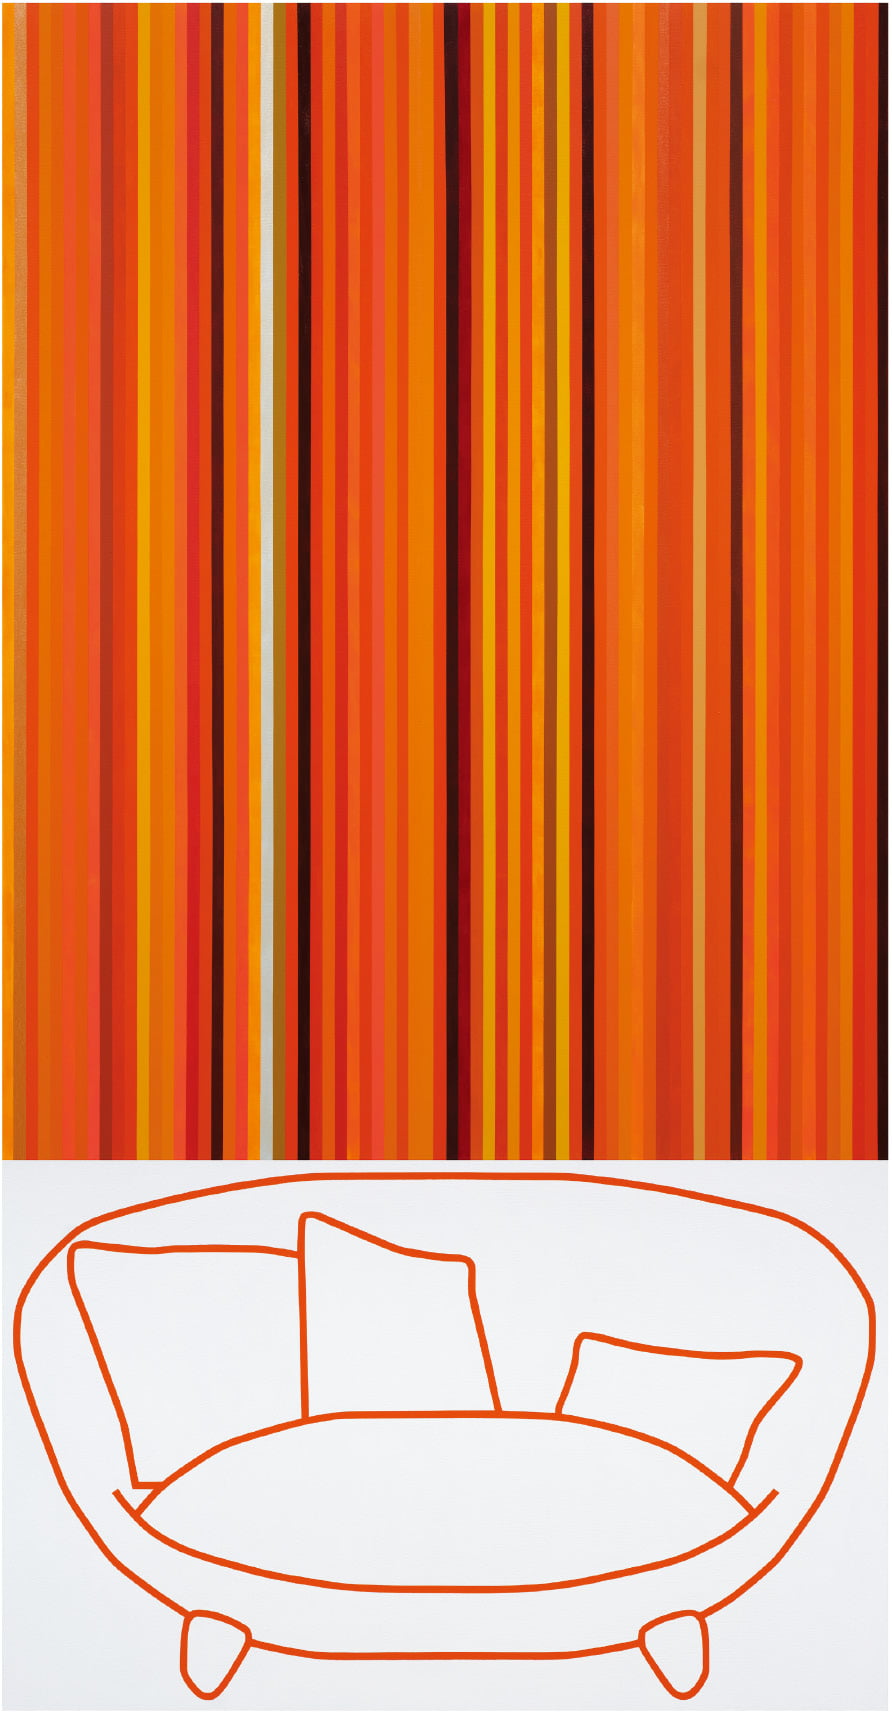 2023-오렌지색-소파, 2023, 캔버스 위에 아크릴. 